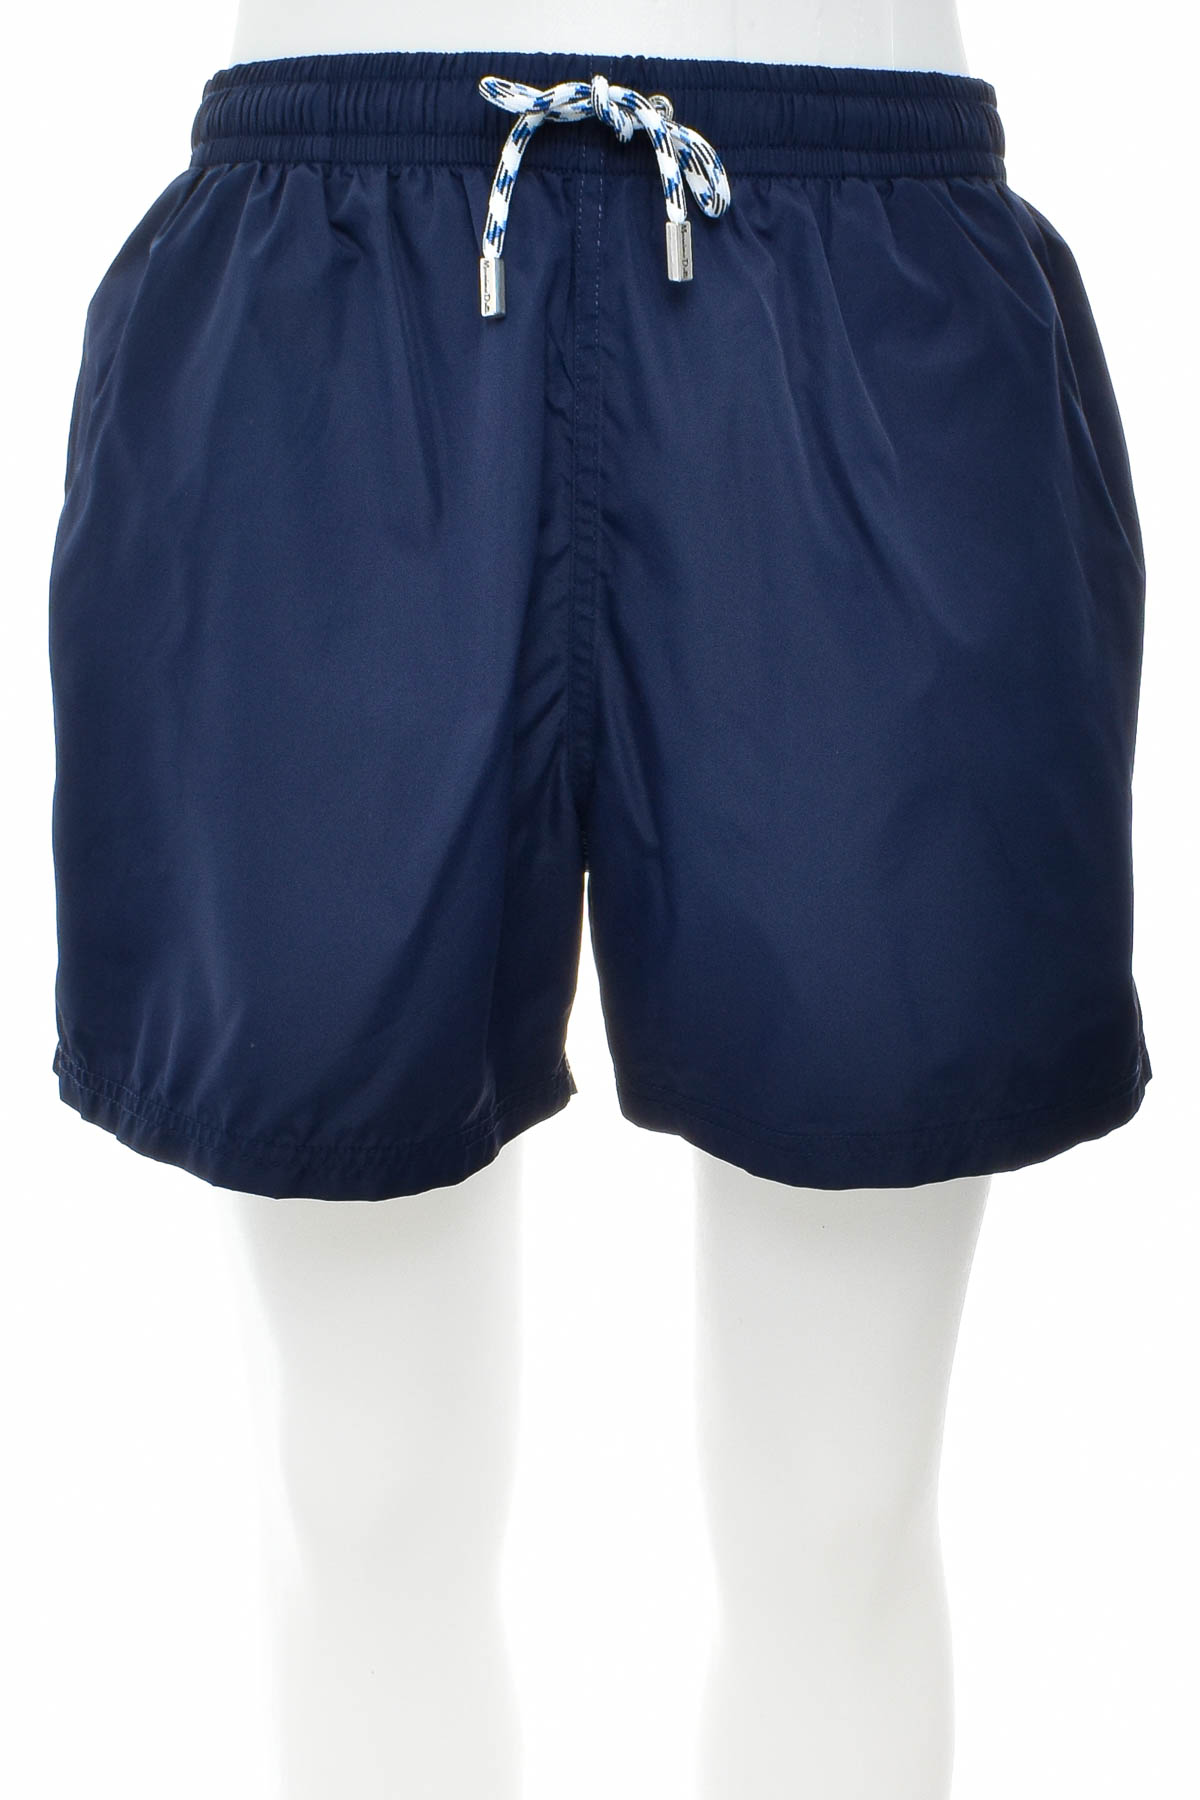 Men's shorts - Massimo Dutti - 0